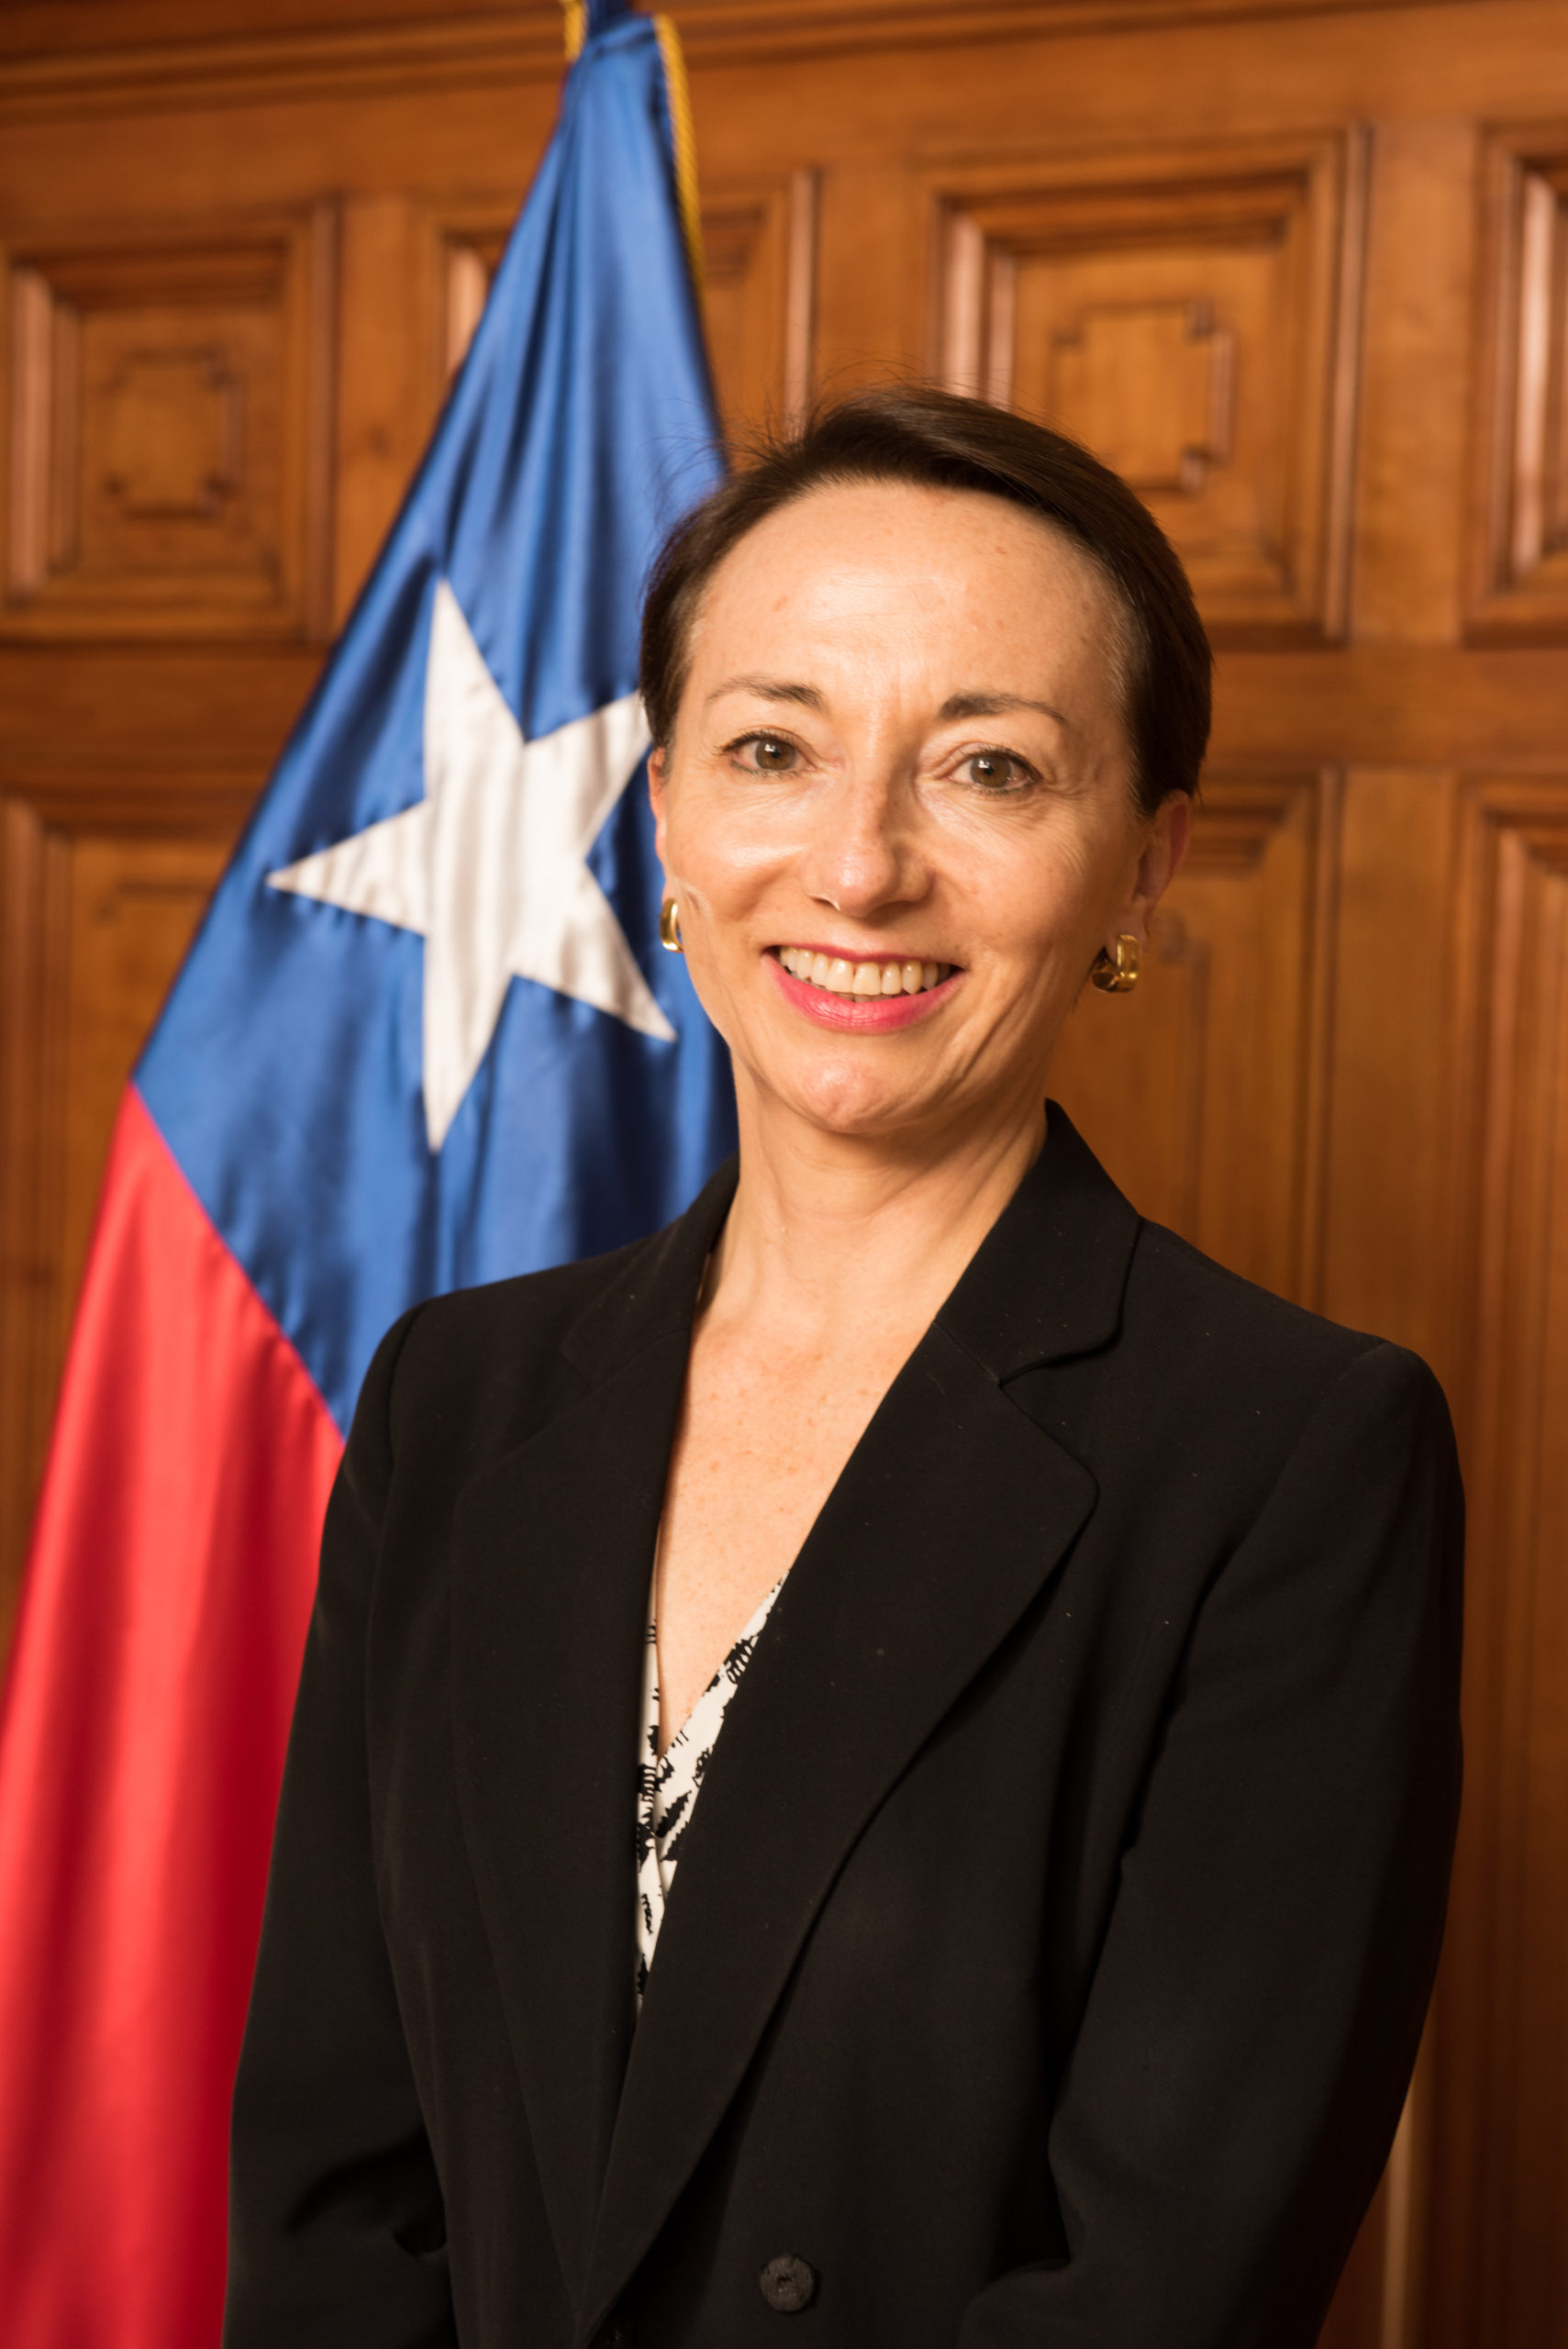 La Ministra Gloria Ana Chevesich es la nueva vocera de la Corte Suprema de Justicia